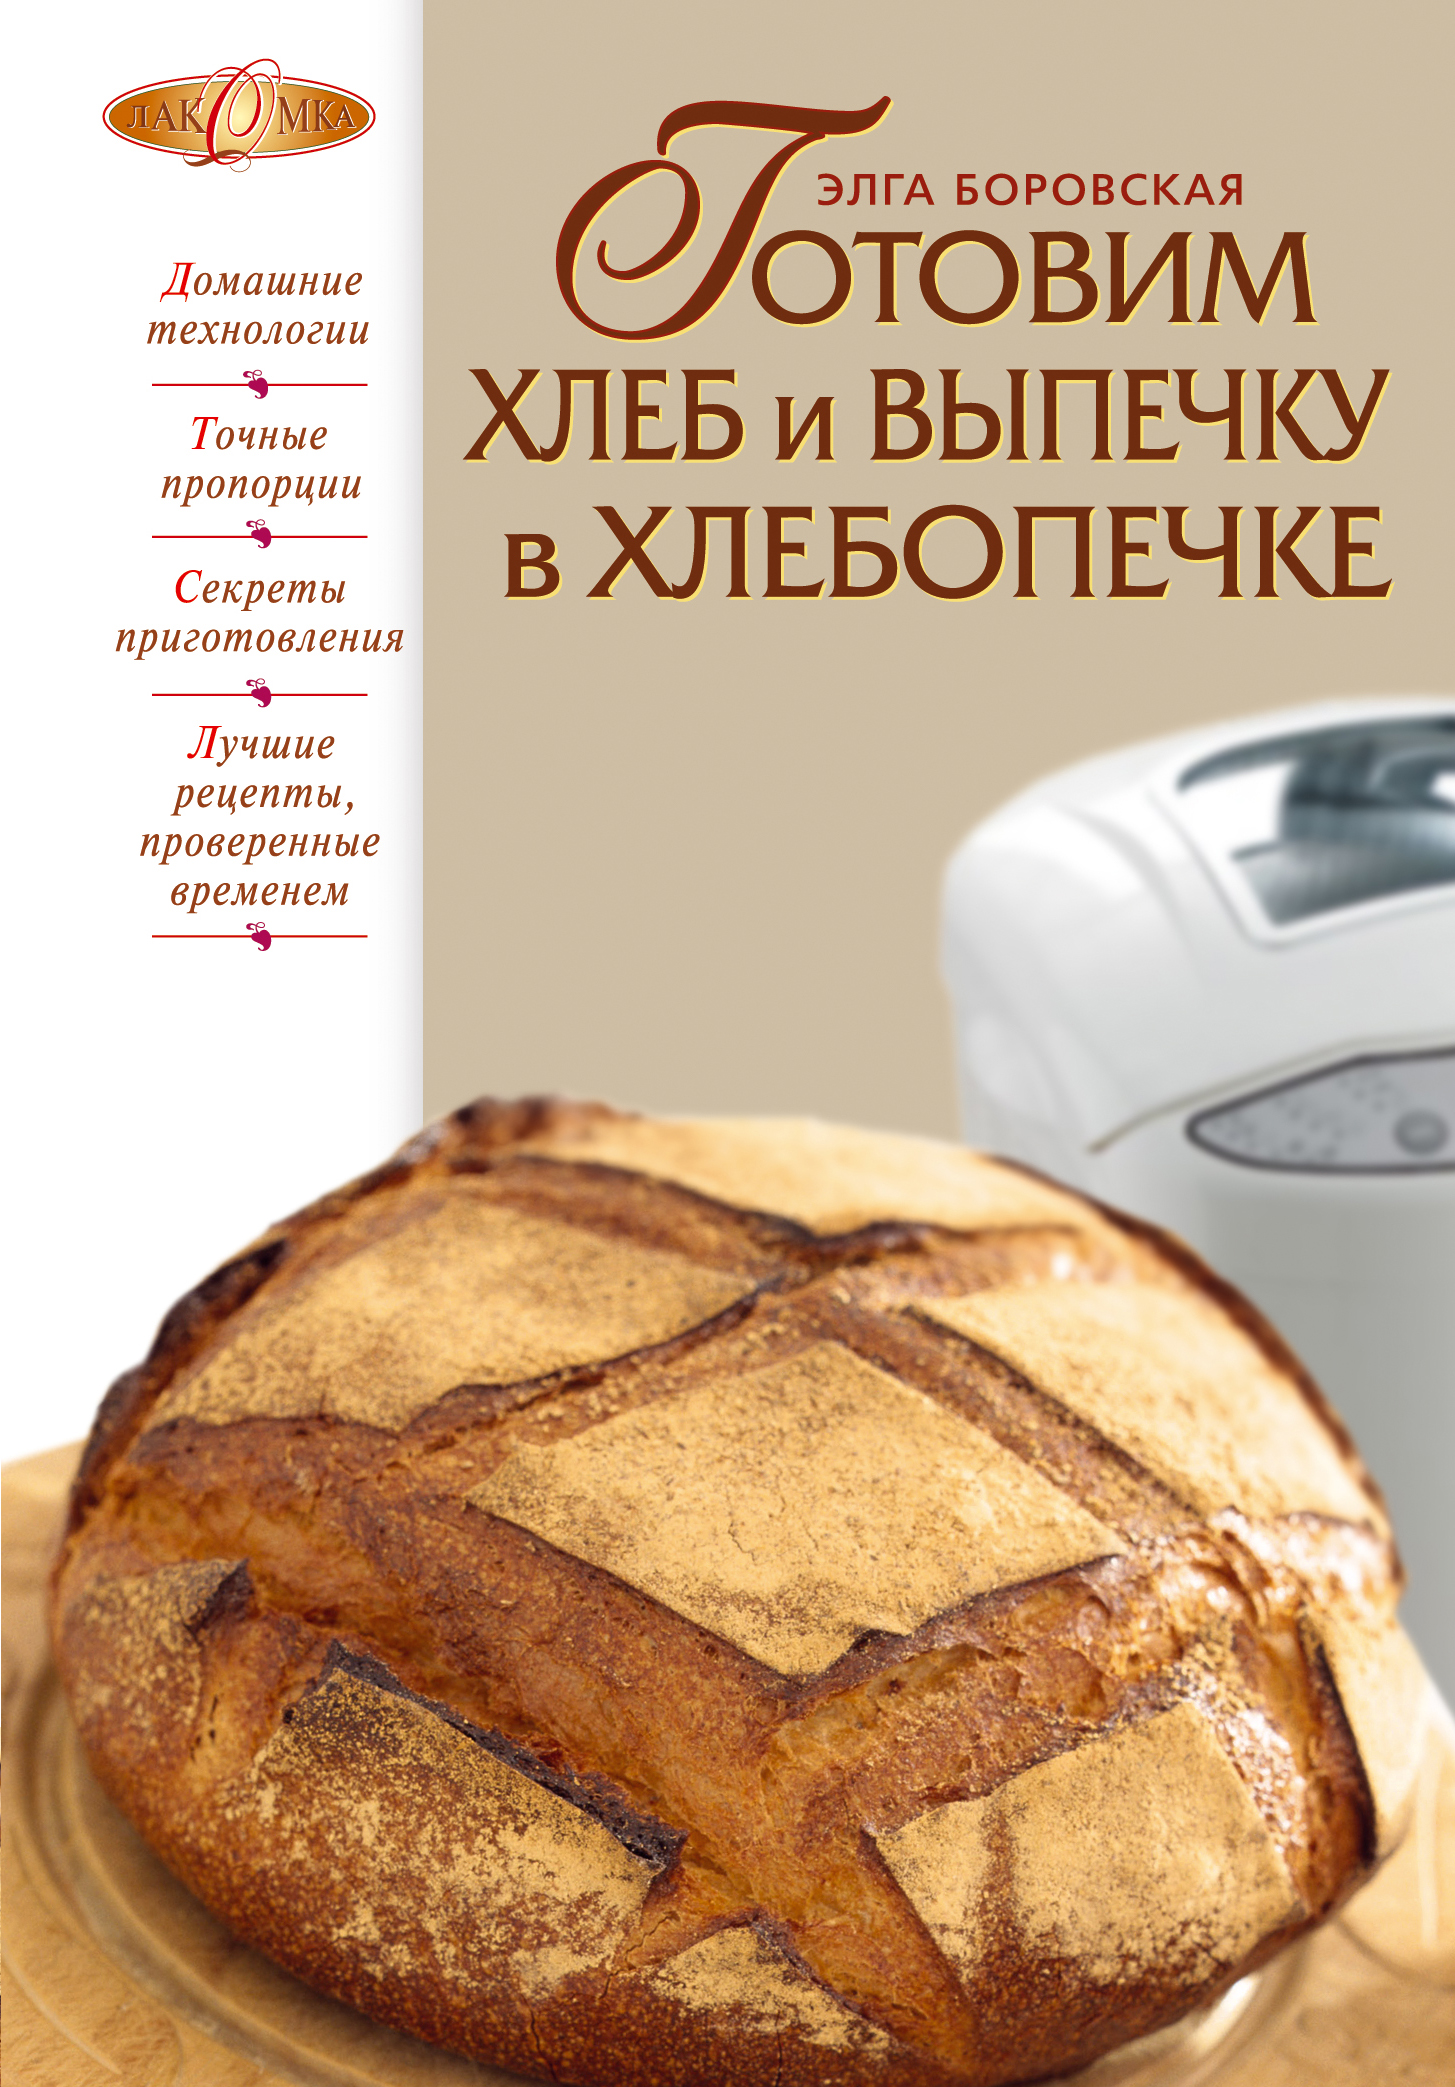 Хлебопечь книга рецептов. Выпечка в хлебопечке. Книжка с рецептами для хлебопечки. Выпечка хлеба в хлебопечке. Хлеб в хлебопечке рецепты книга.